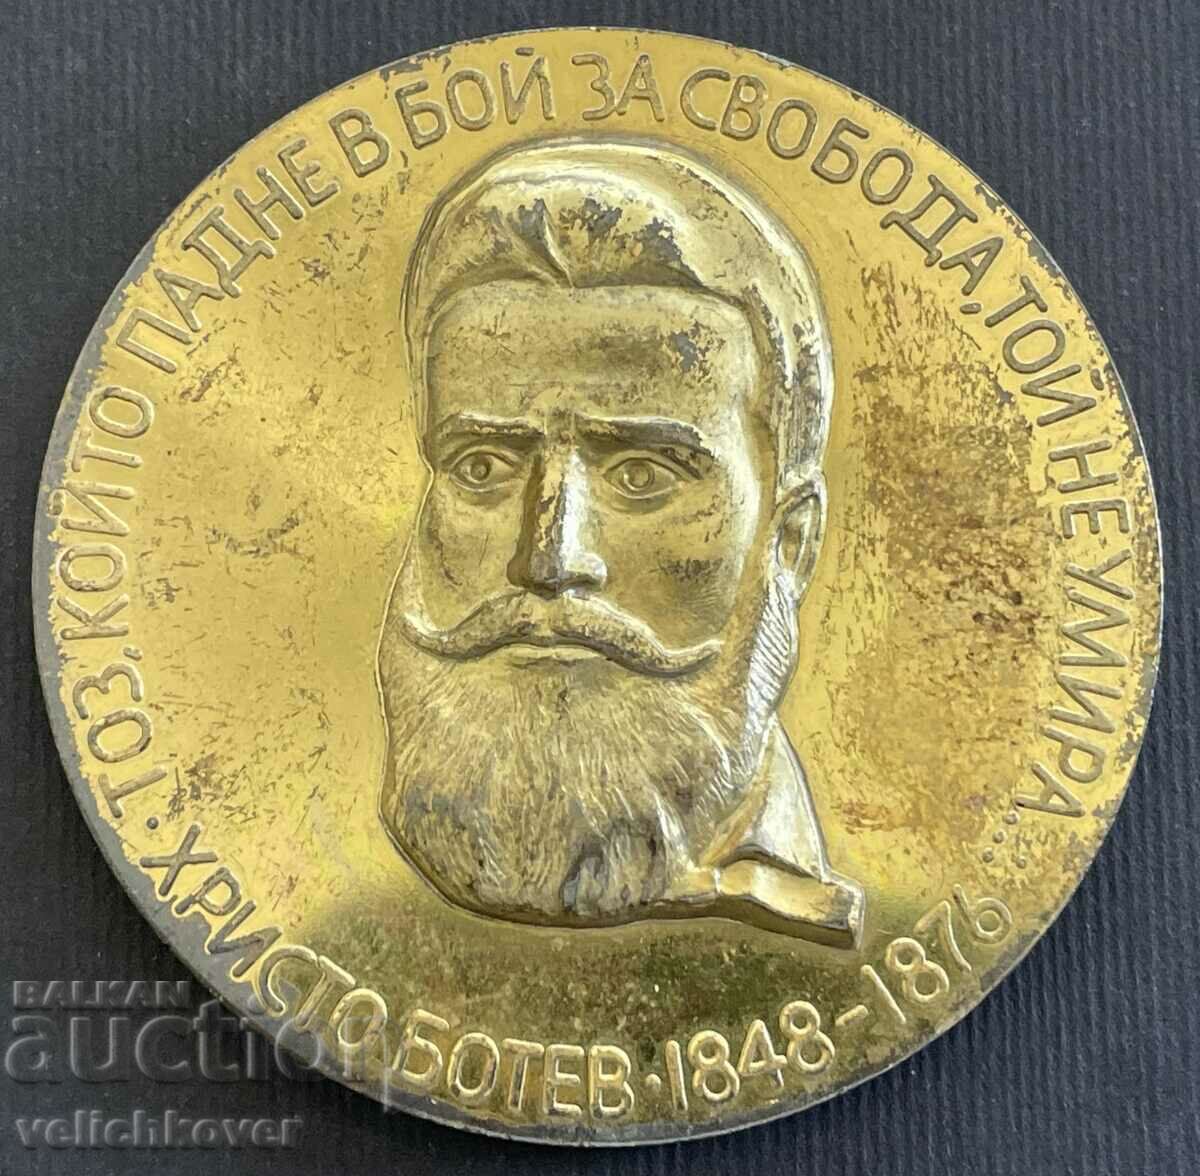 36976 Πλακέτα Βουλγαρίας 90 χρόνια Από τον θάνατο του Χρίστο Μπότεφ Ραντέτσκι